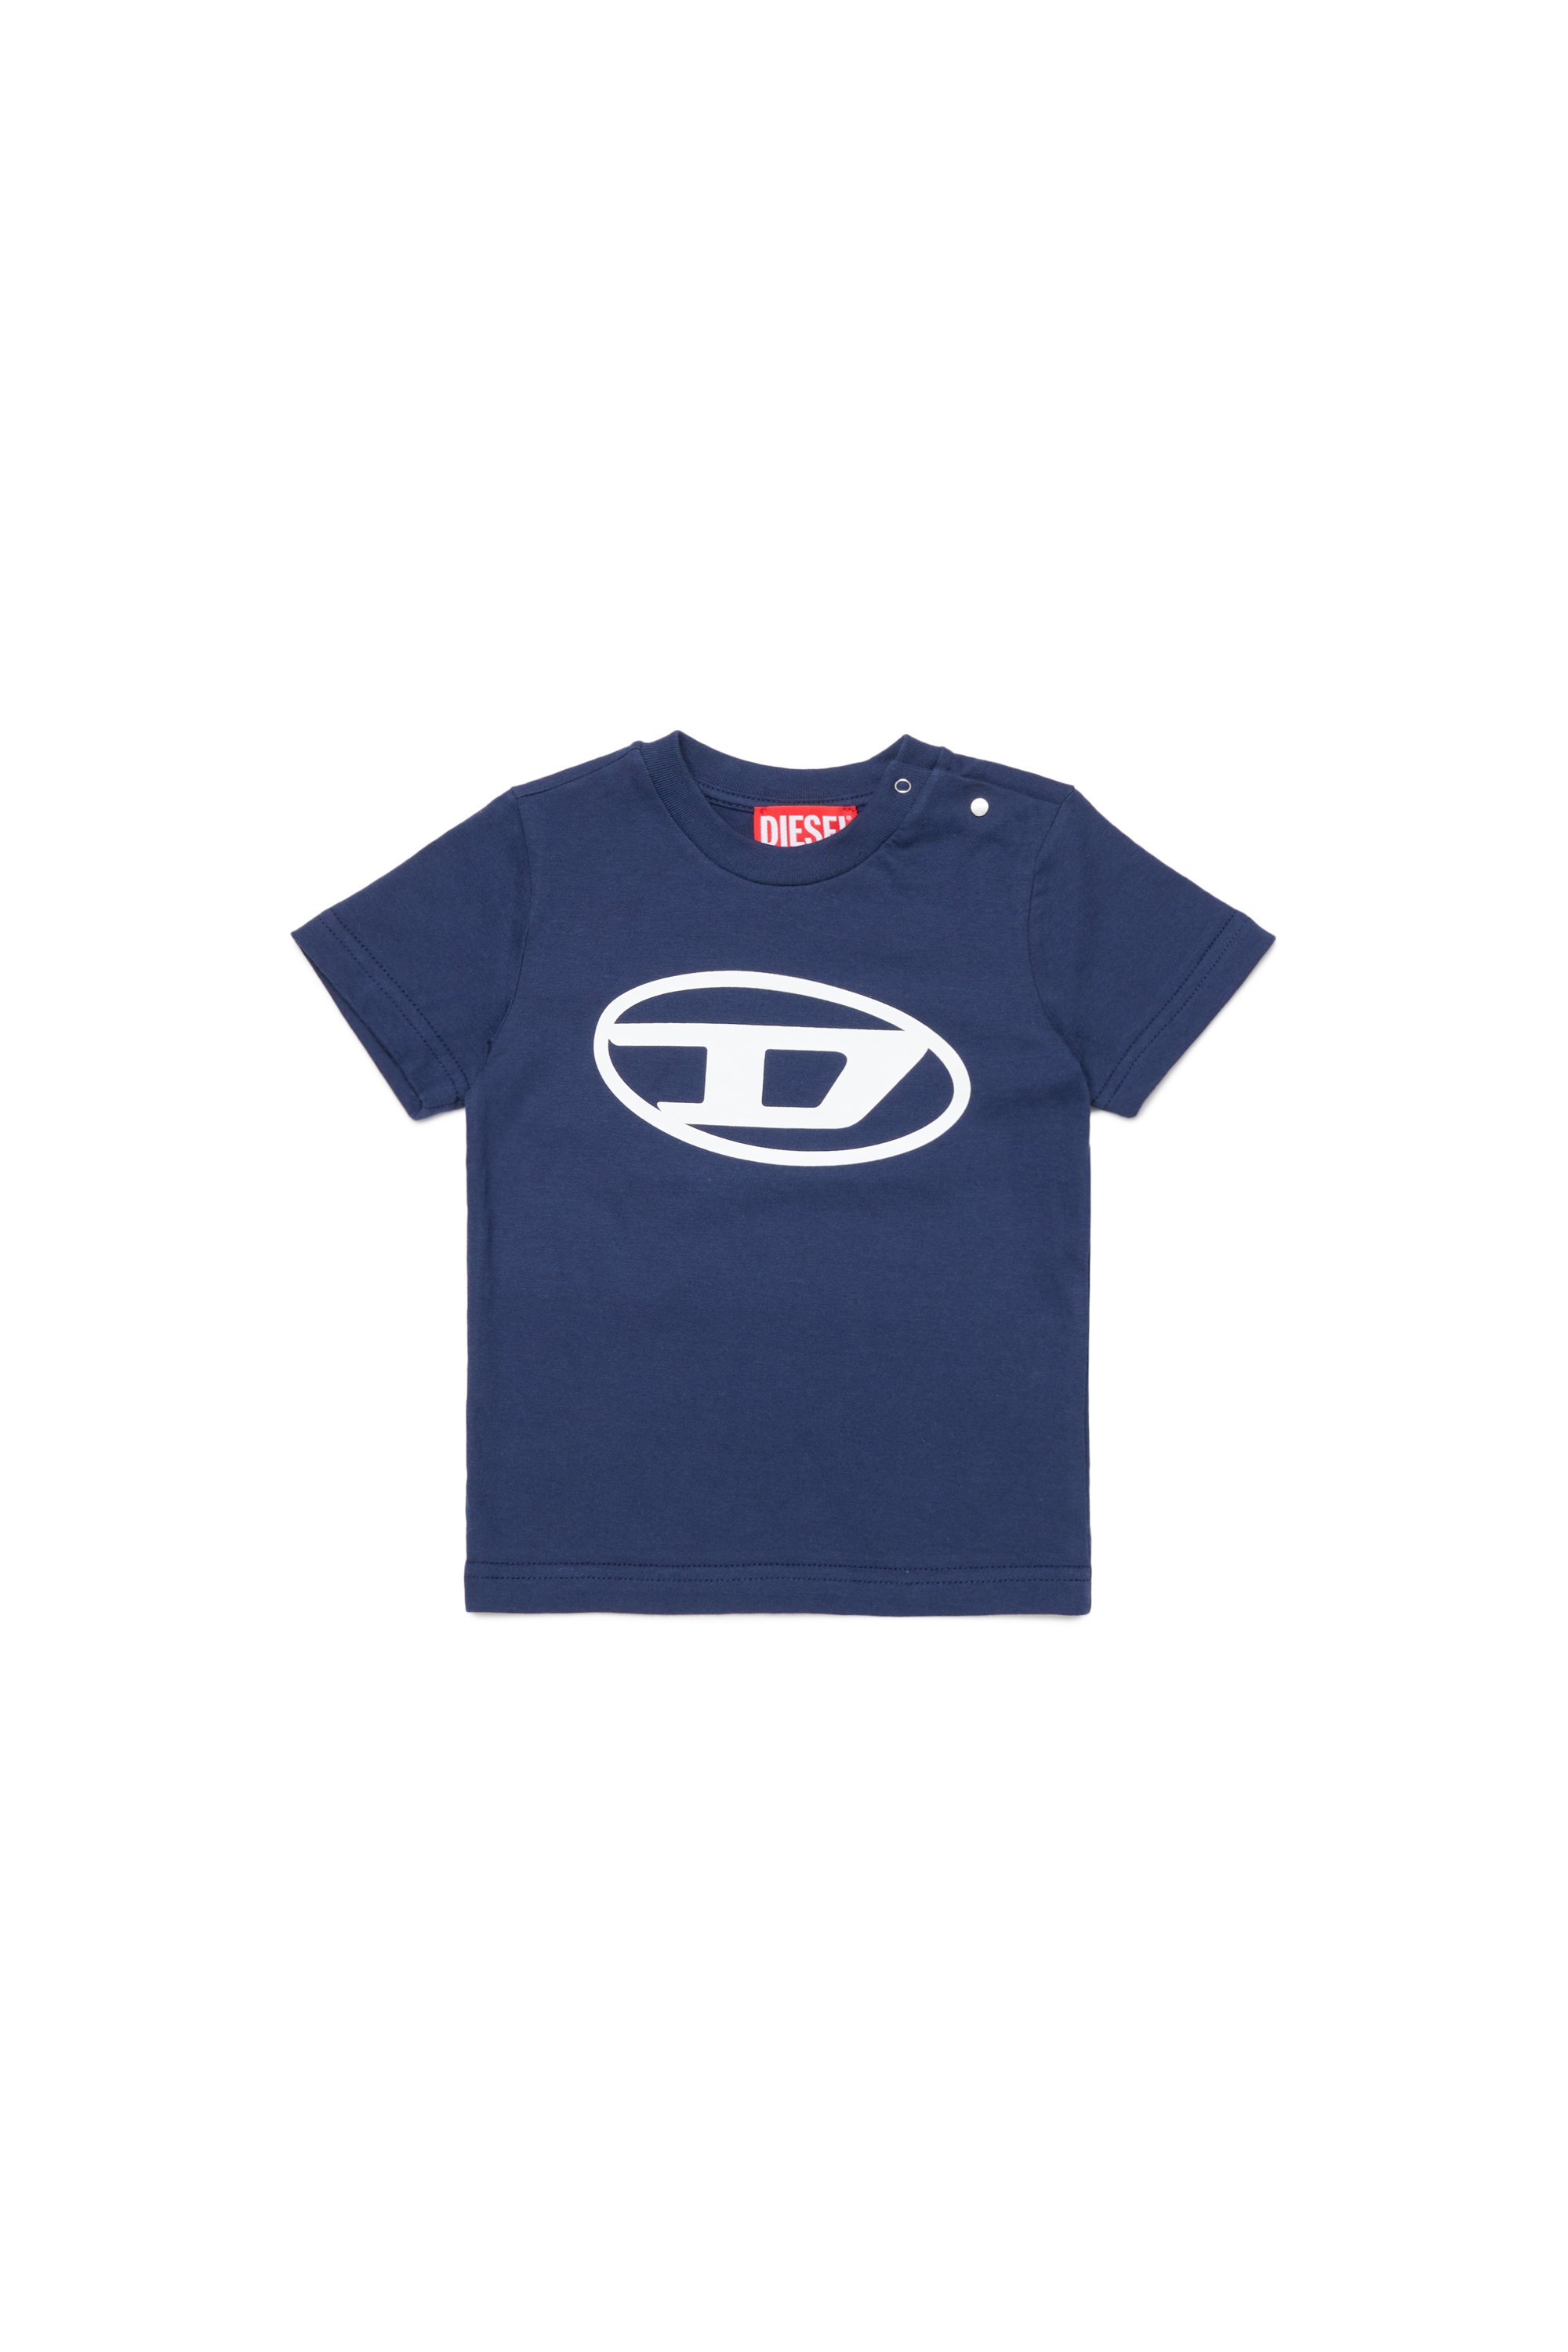 Diesel - T-Shirt mit Oval D-Logo - T-Shirts und Tops - Unisex - Blau